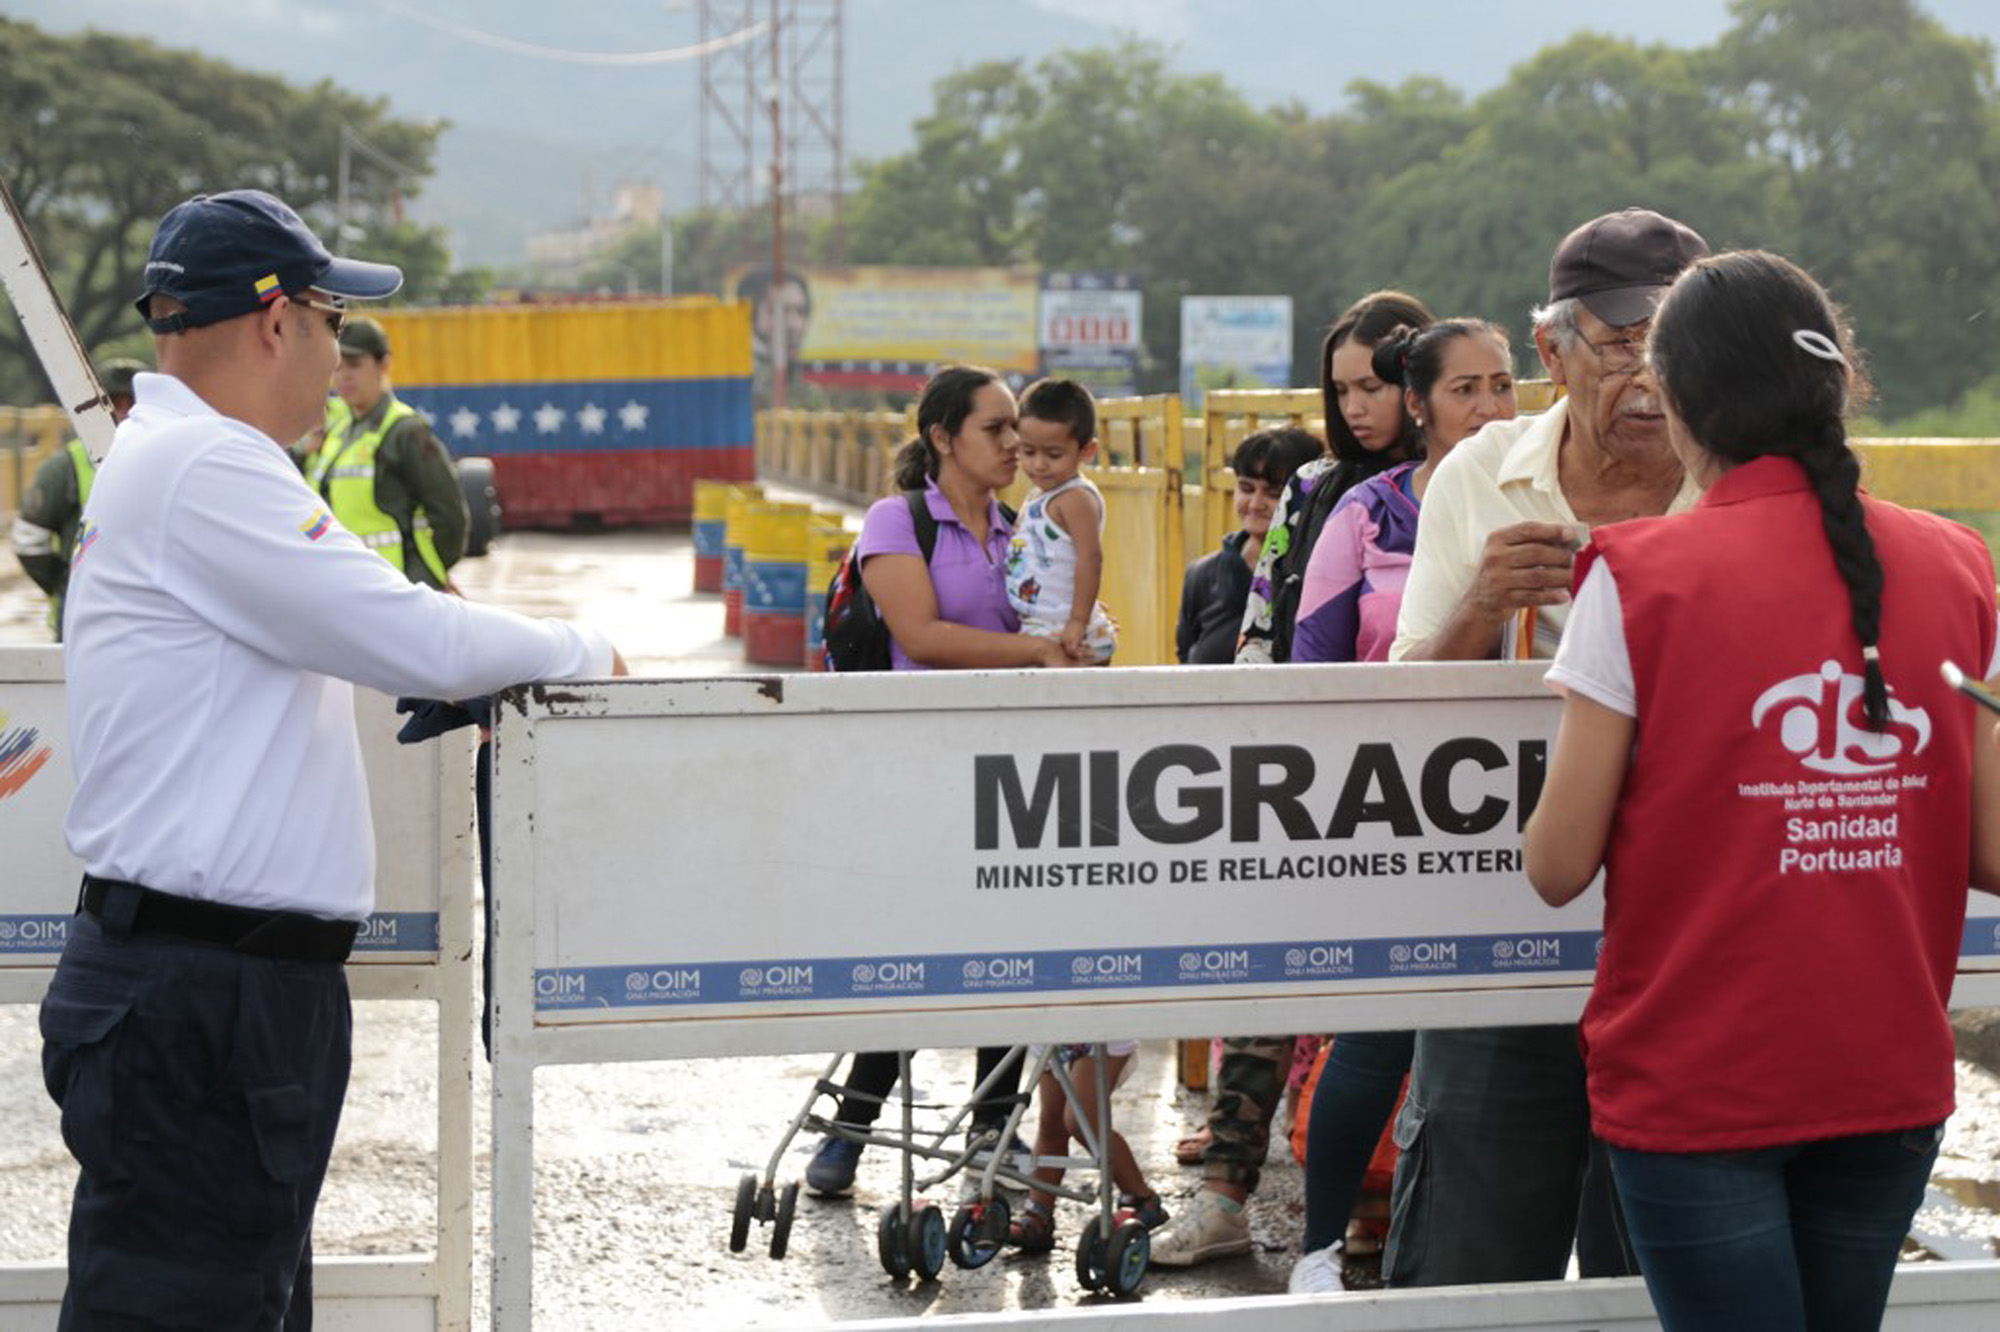 Colombia exigirá el uso de mascarillas a migrantes que cruzen la frontera con Venezuela (Video)